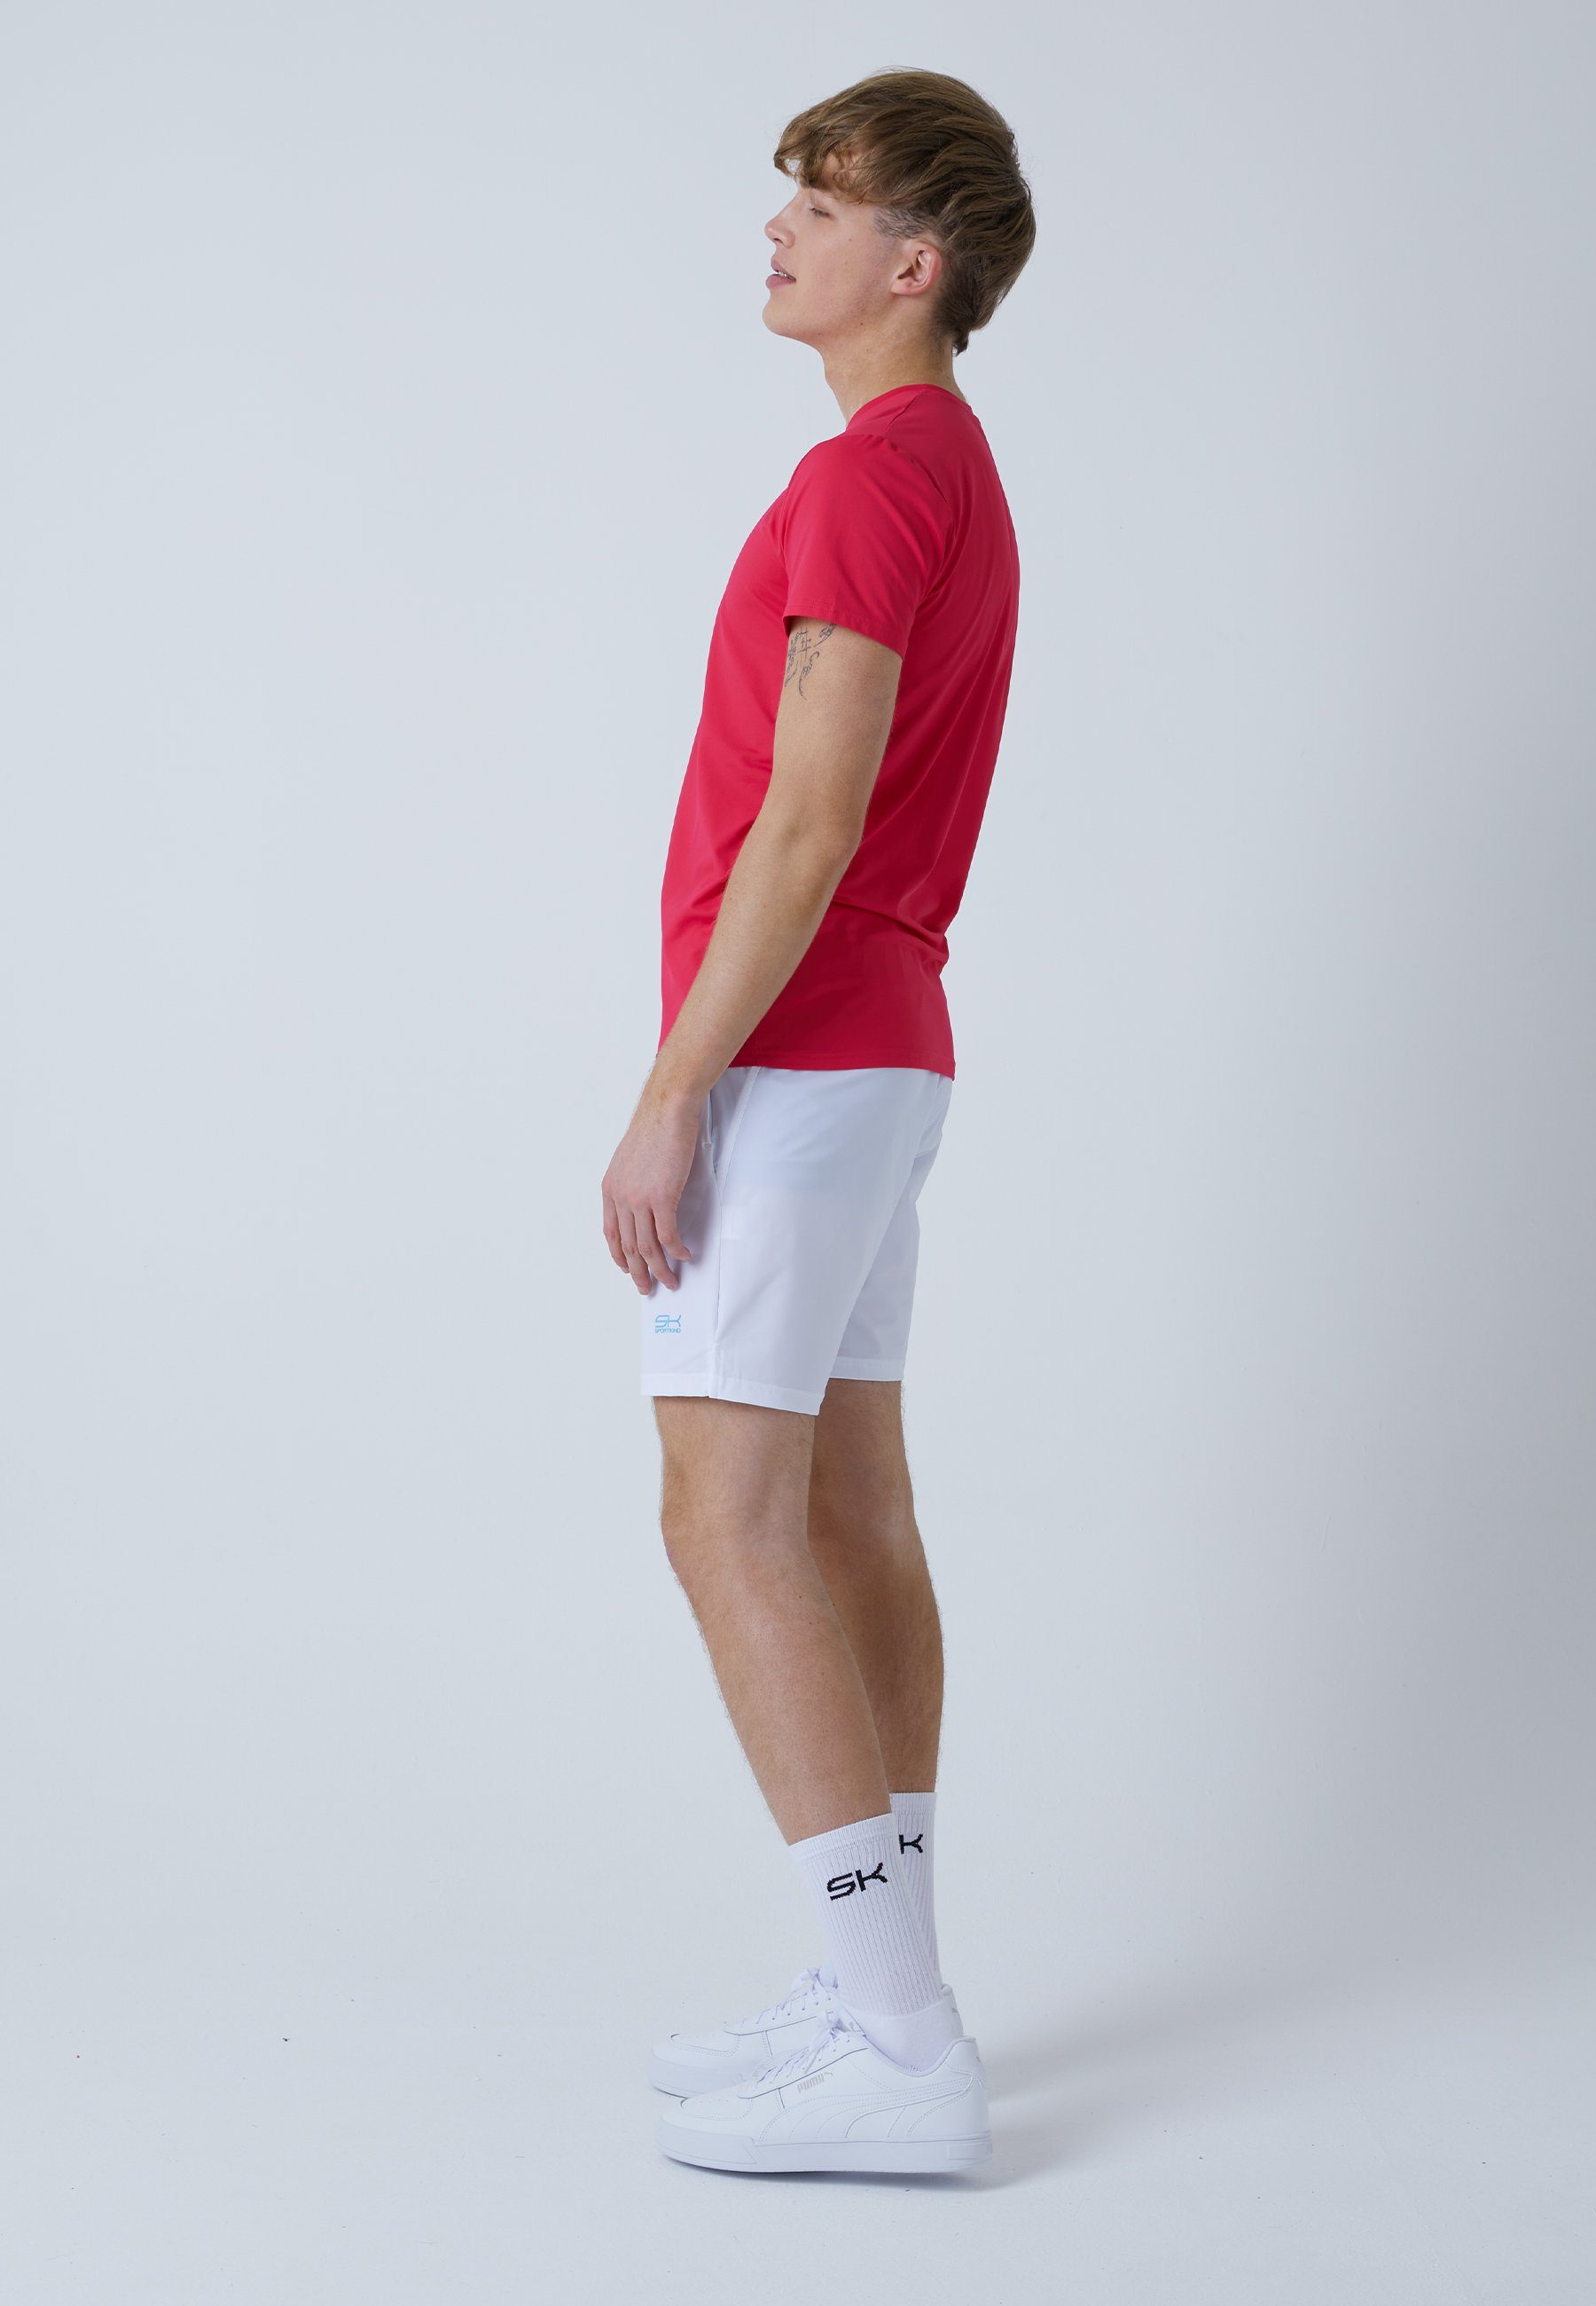 Jungen Funktionsshirt Rundhals Tennis SPORTKIND pink & Herren T-Shirt